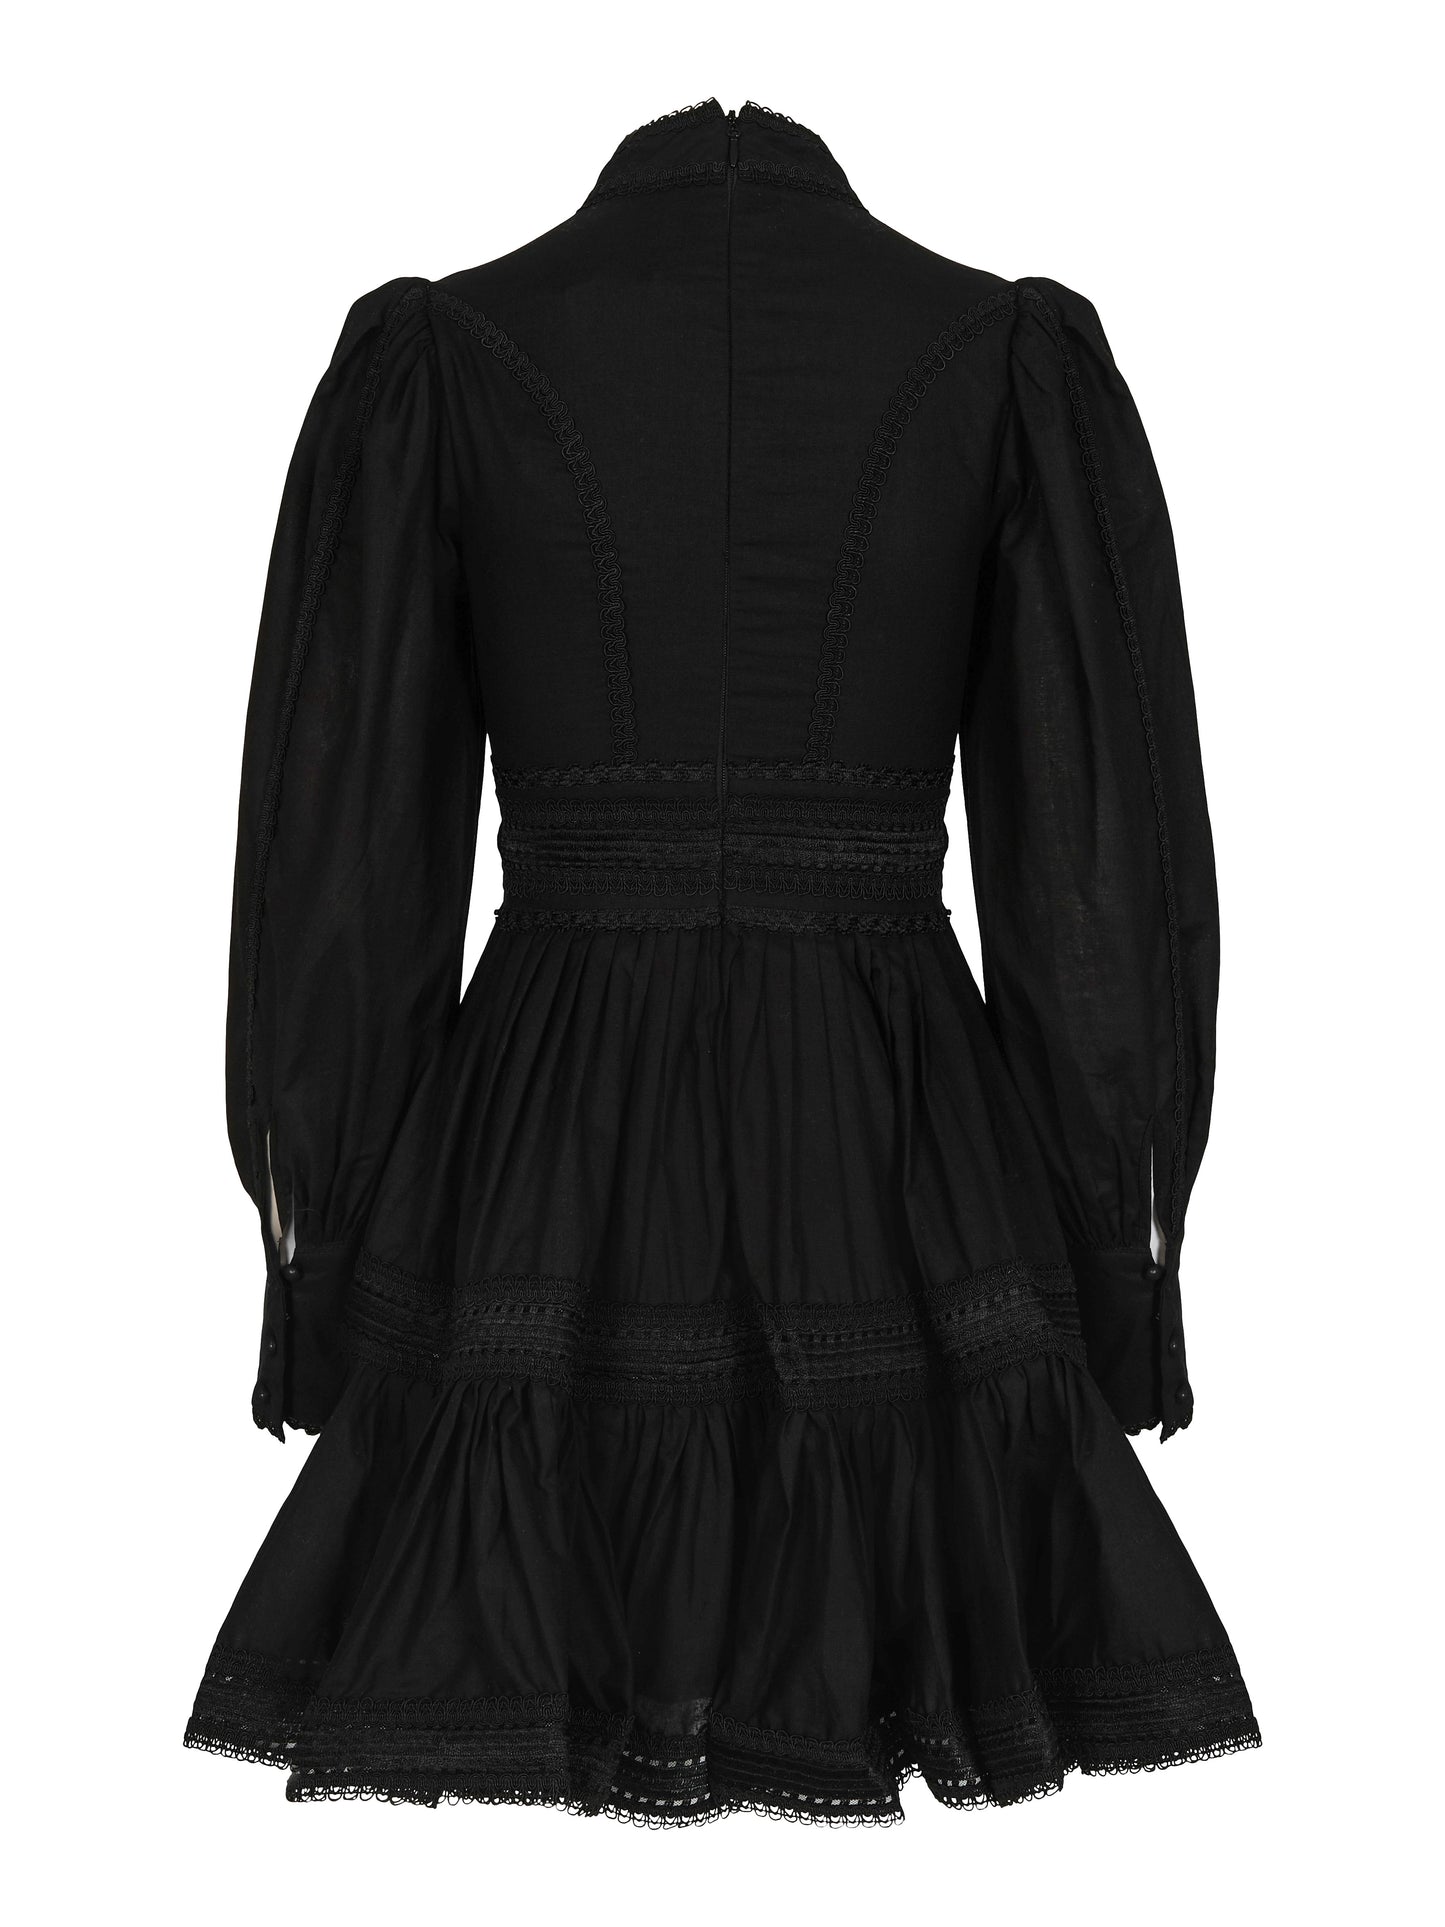 Star Dress - Black